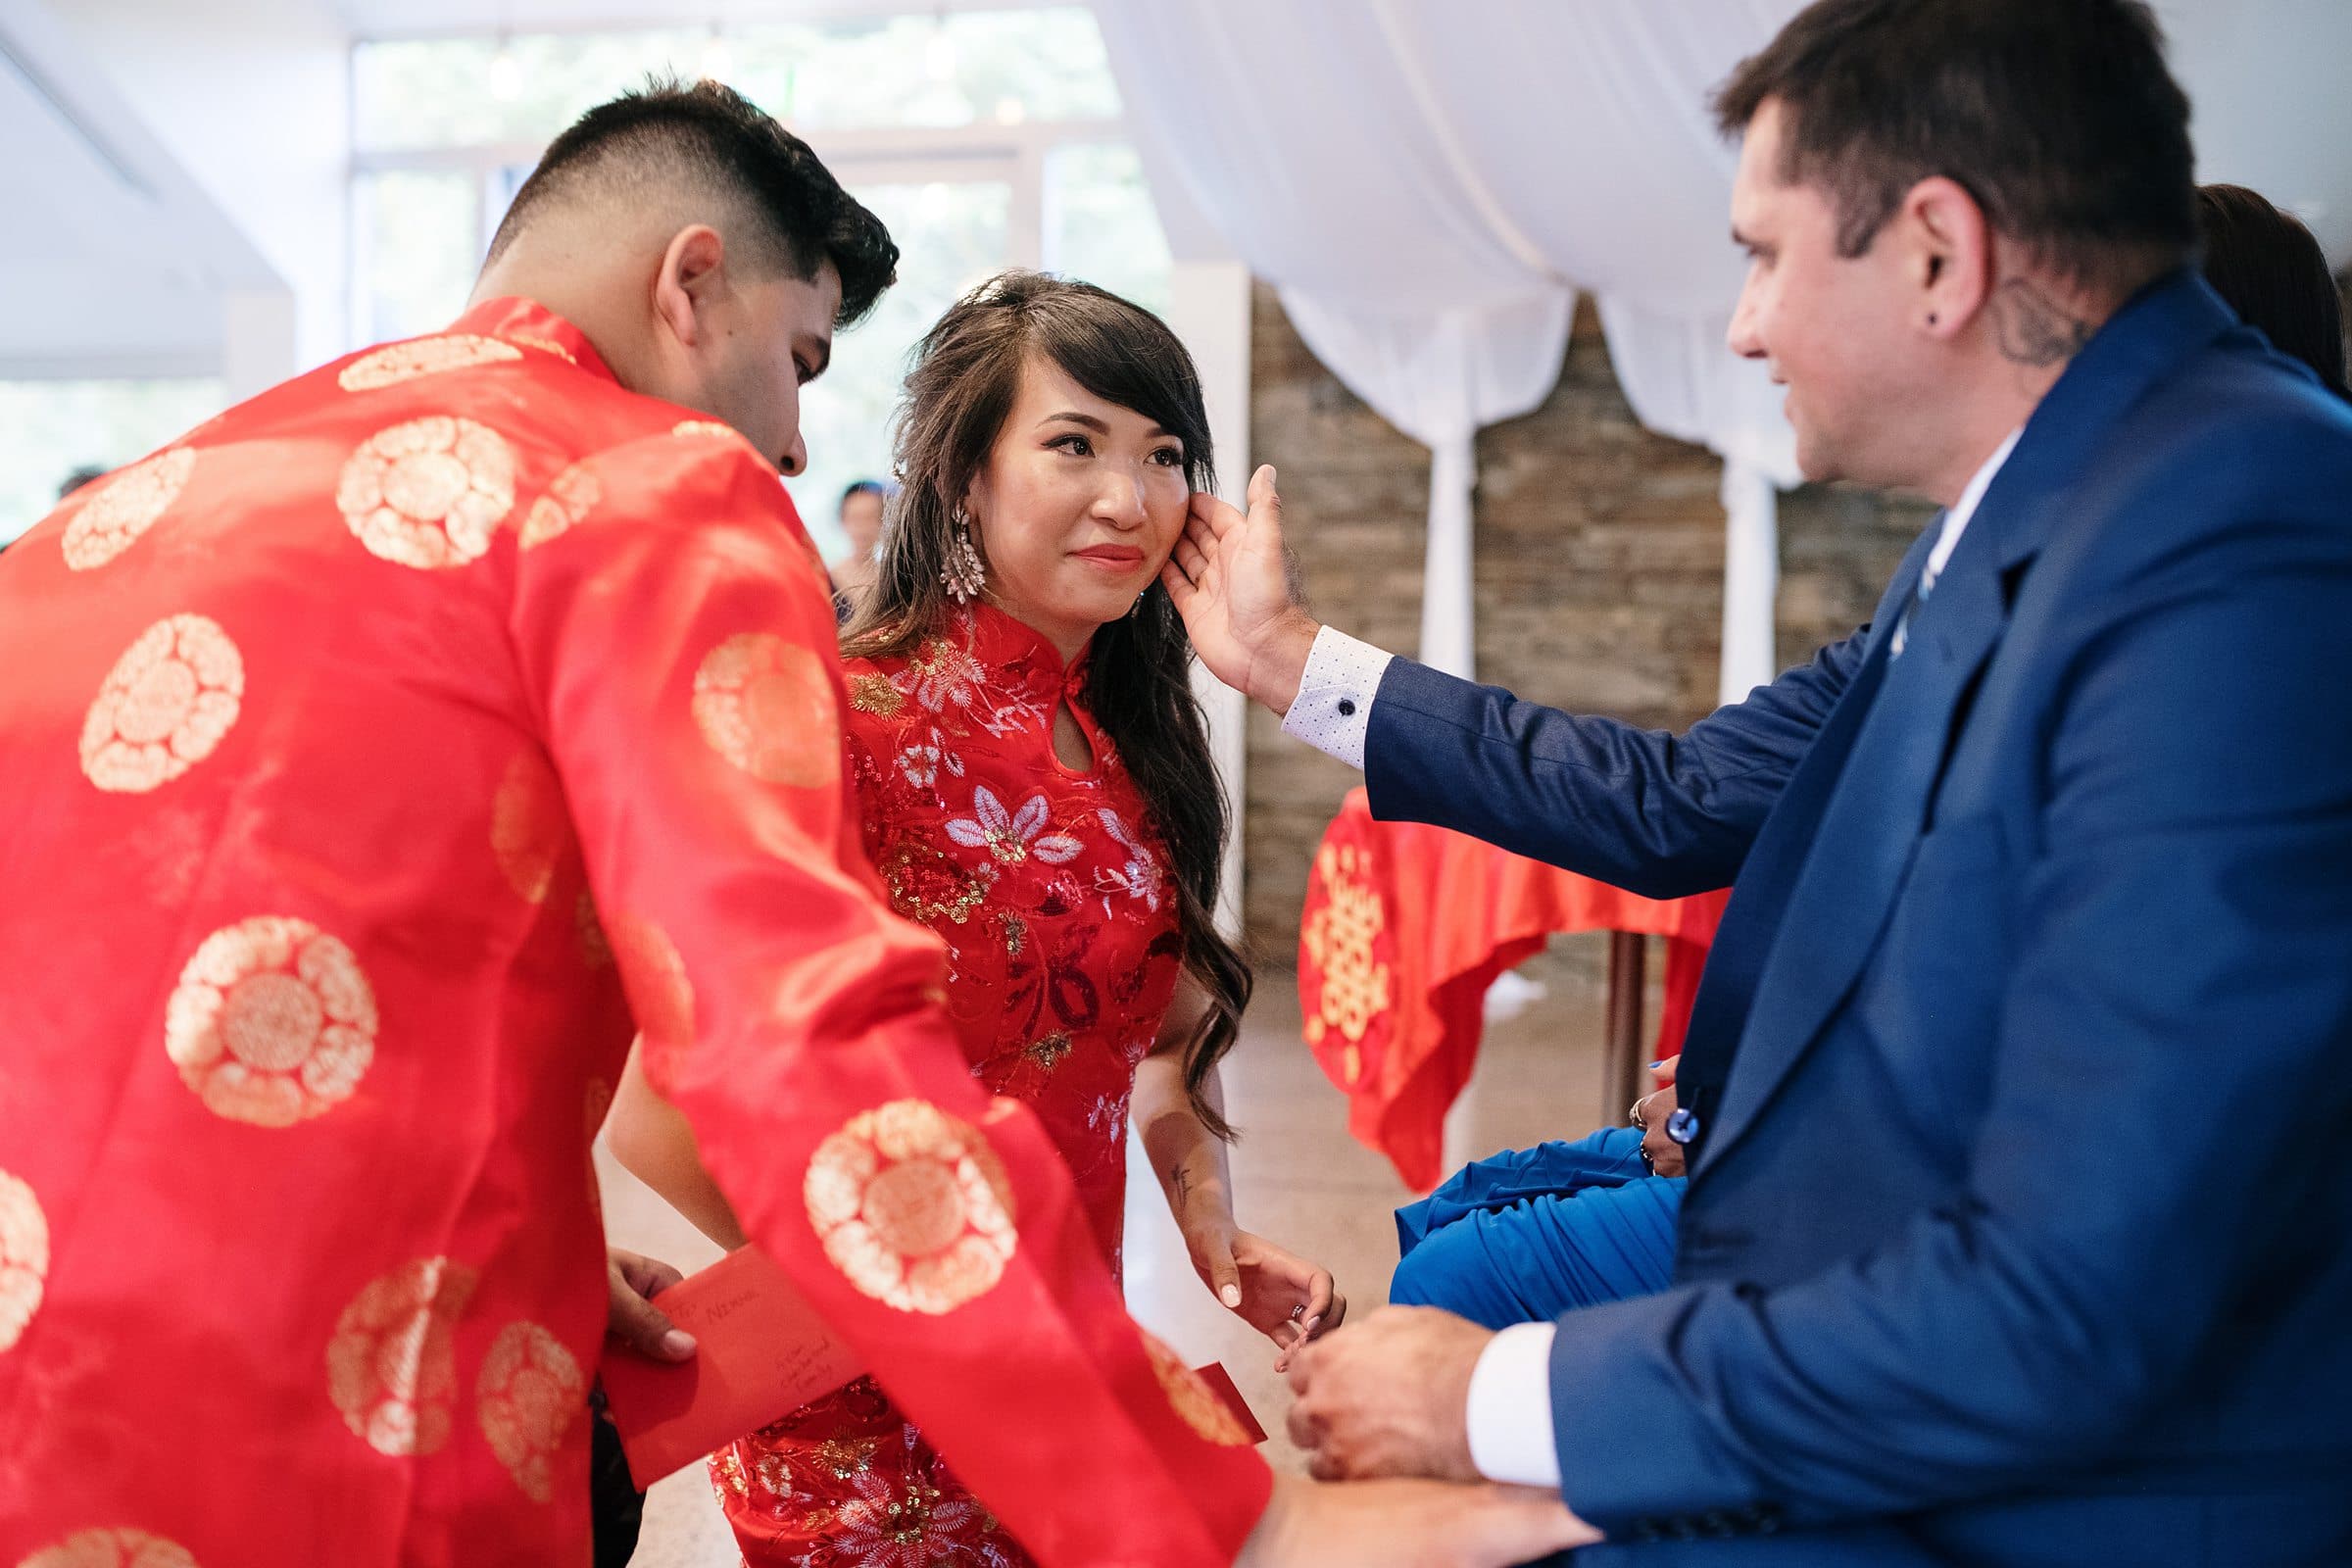 Markovina wedding tea ceremony